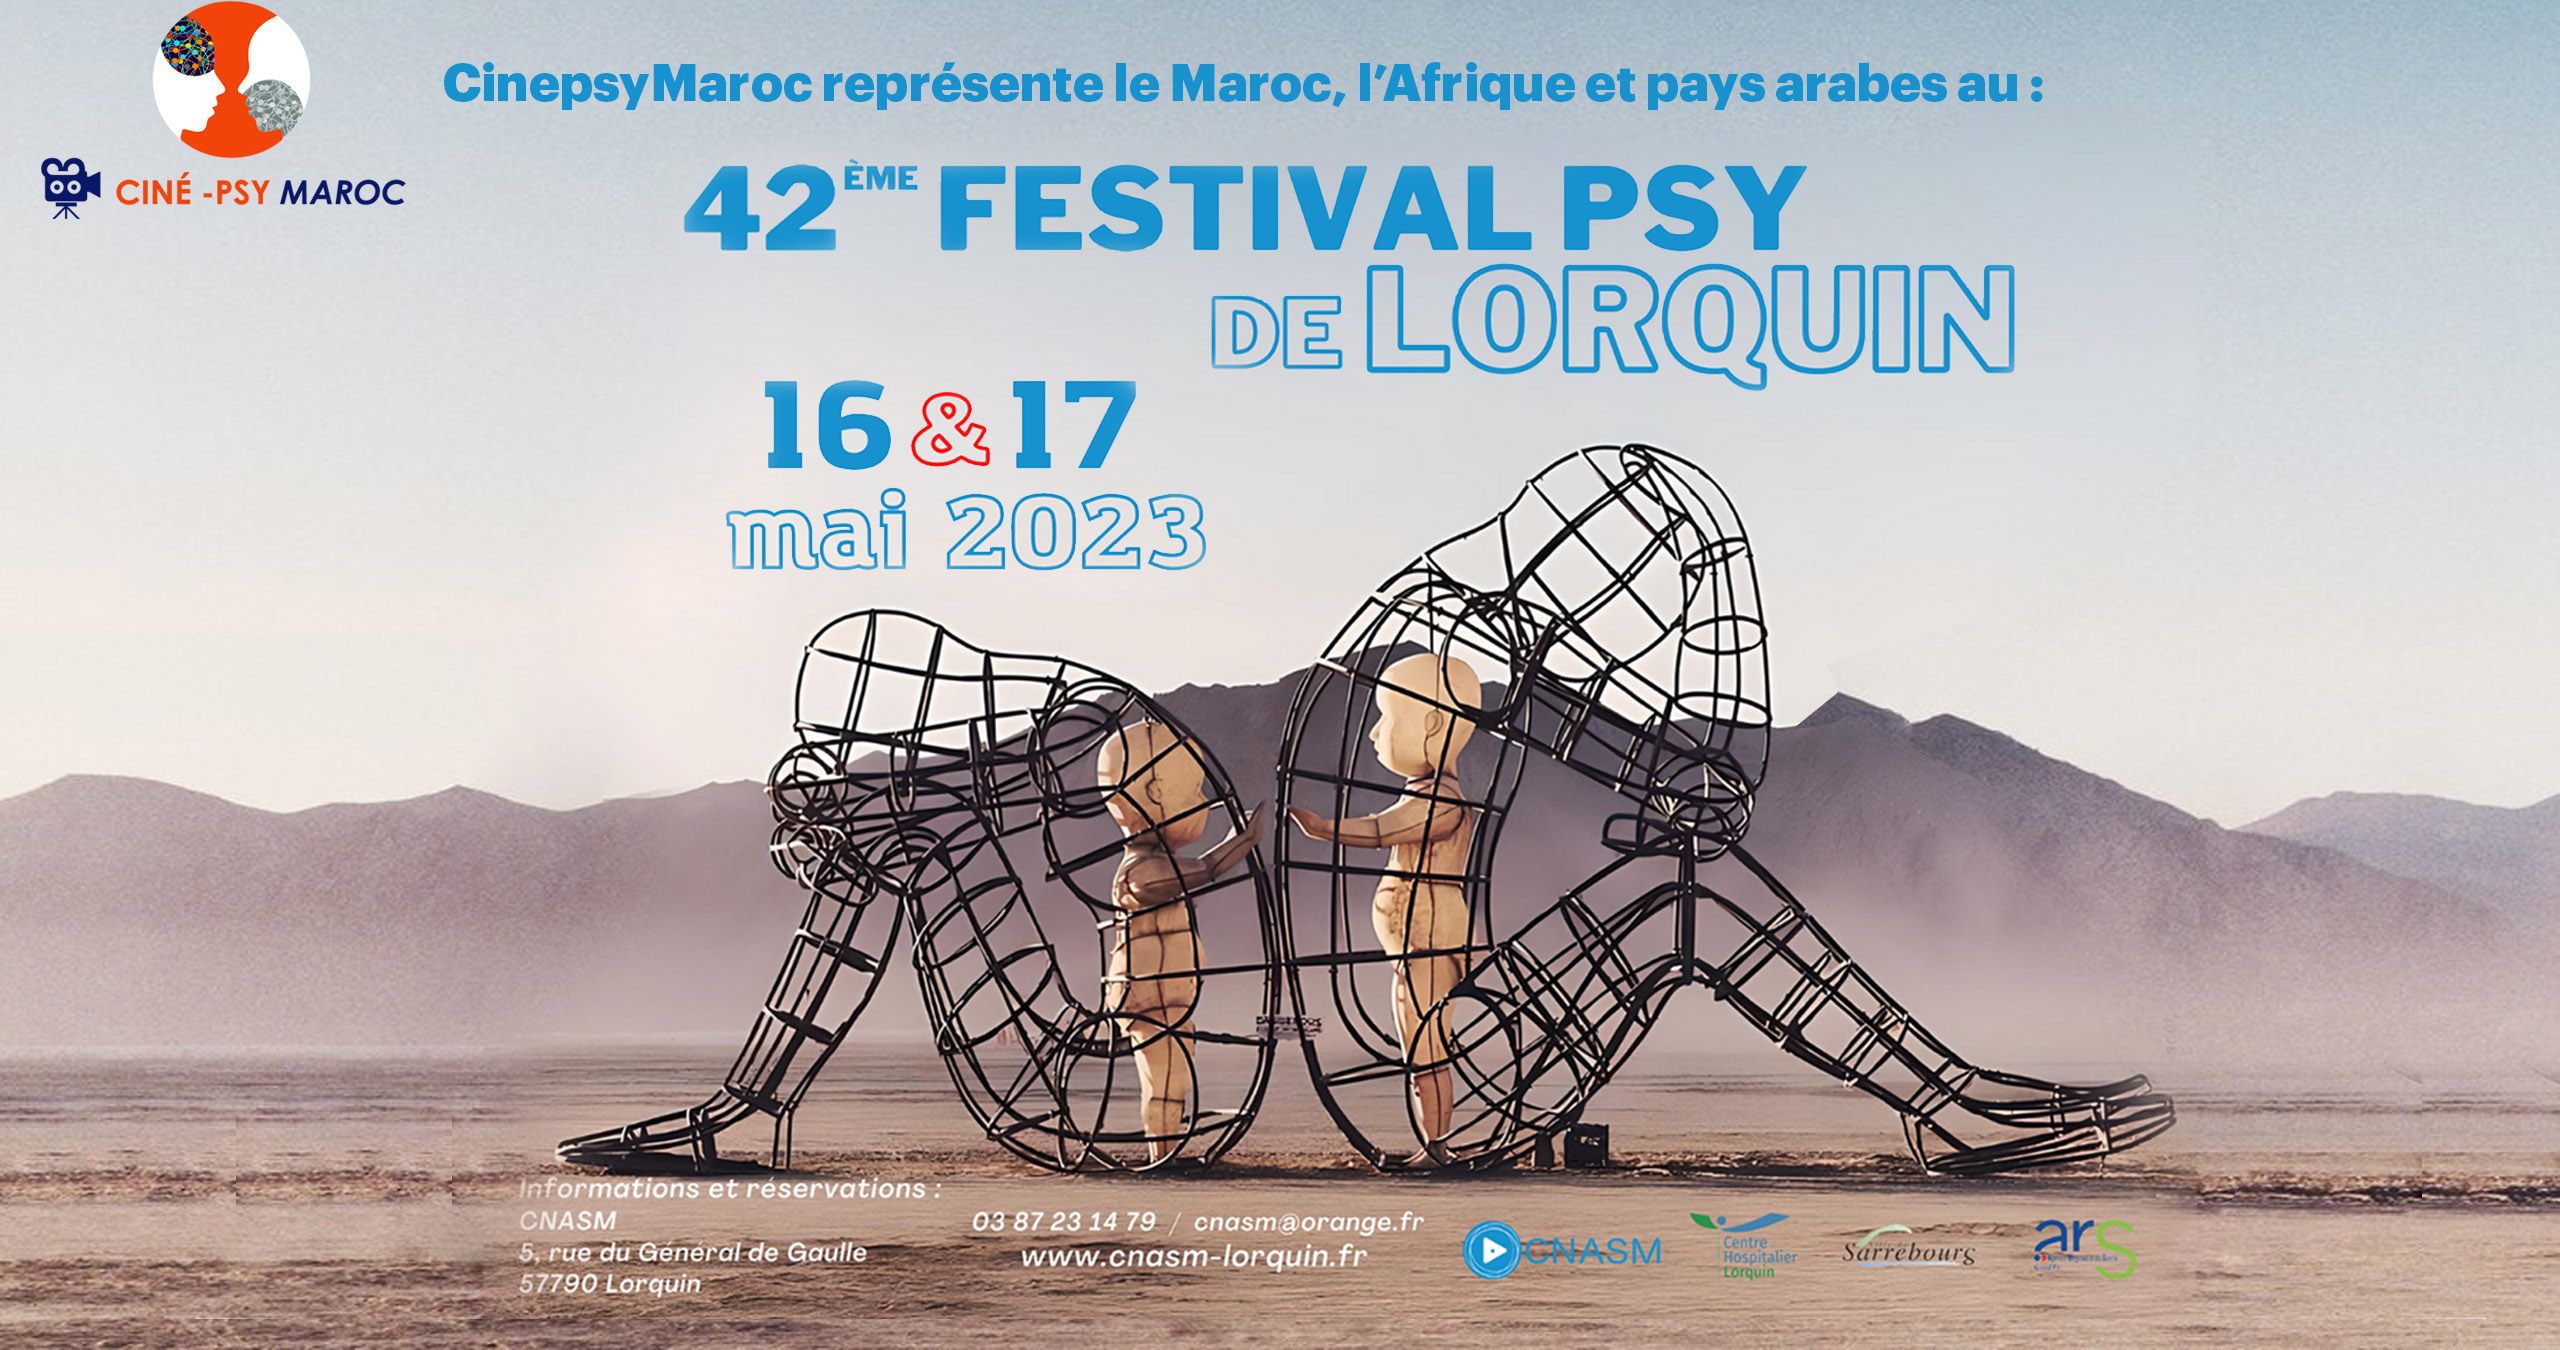 42Em Festival de lorquin Cinepsy Maroc